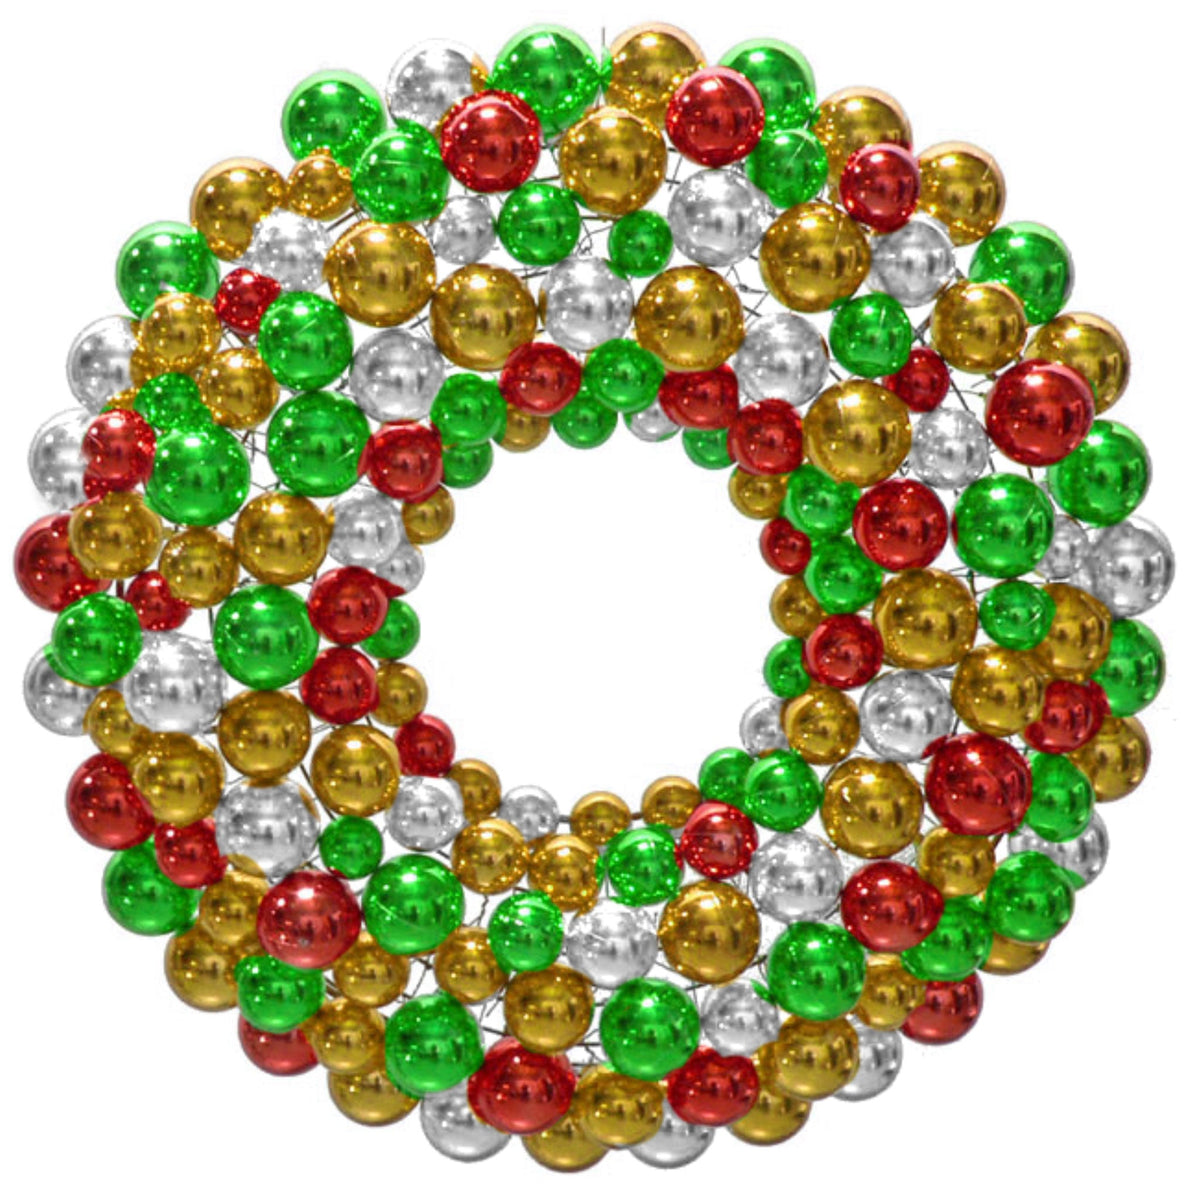 Multi-Color Ball Ornament Wreath